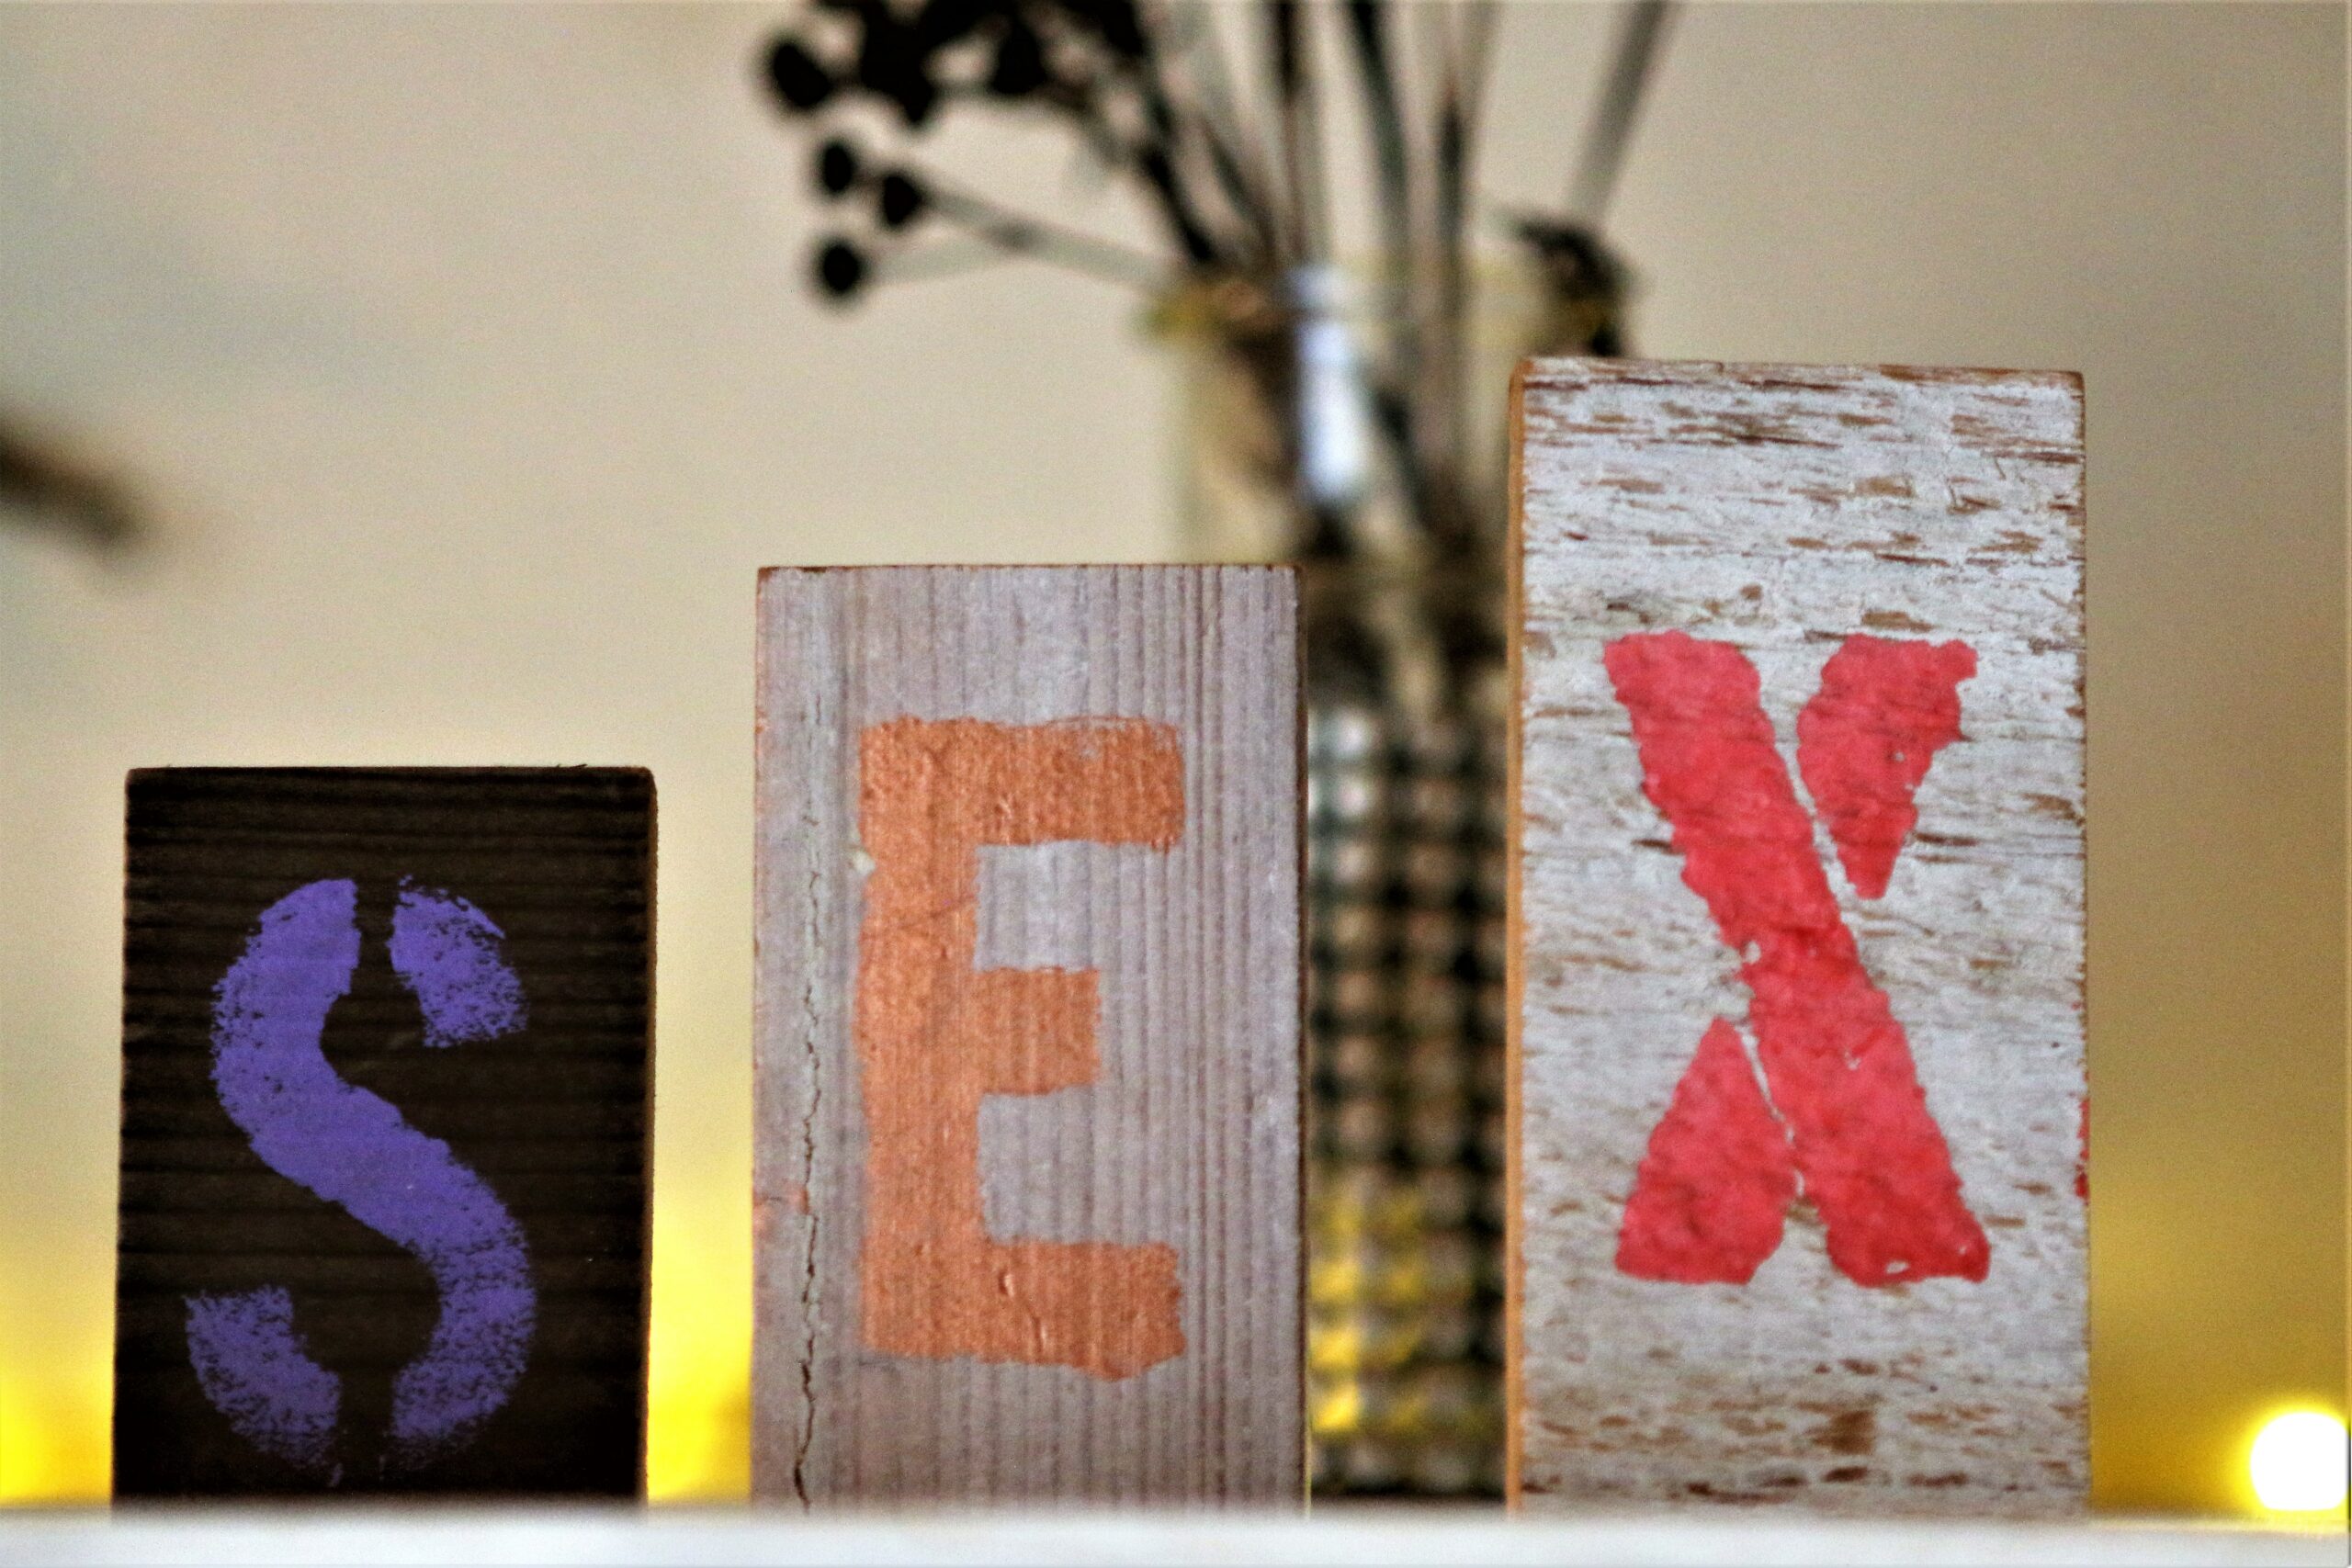 Sex & Samfund søger ung-til-yngre-rådgivere til Sexlinien for Unge og Privatsnak